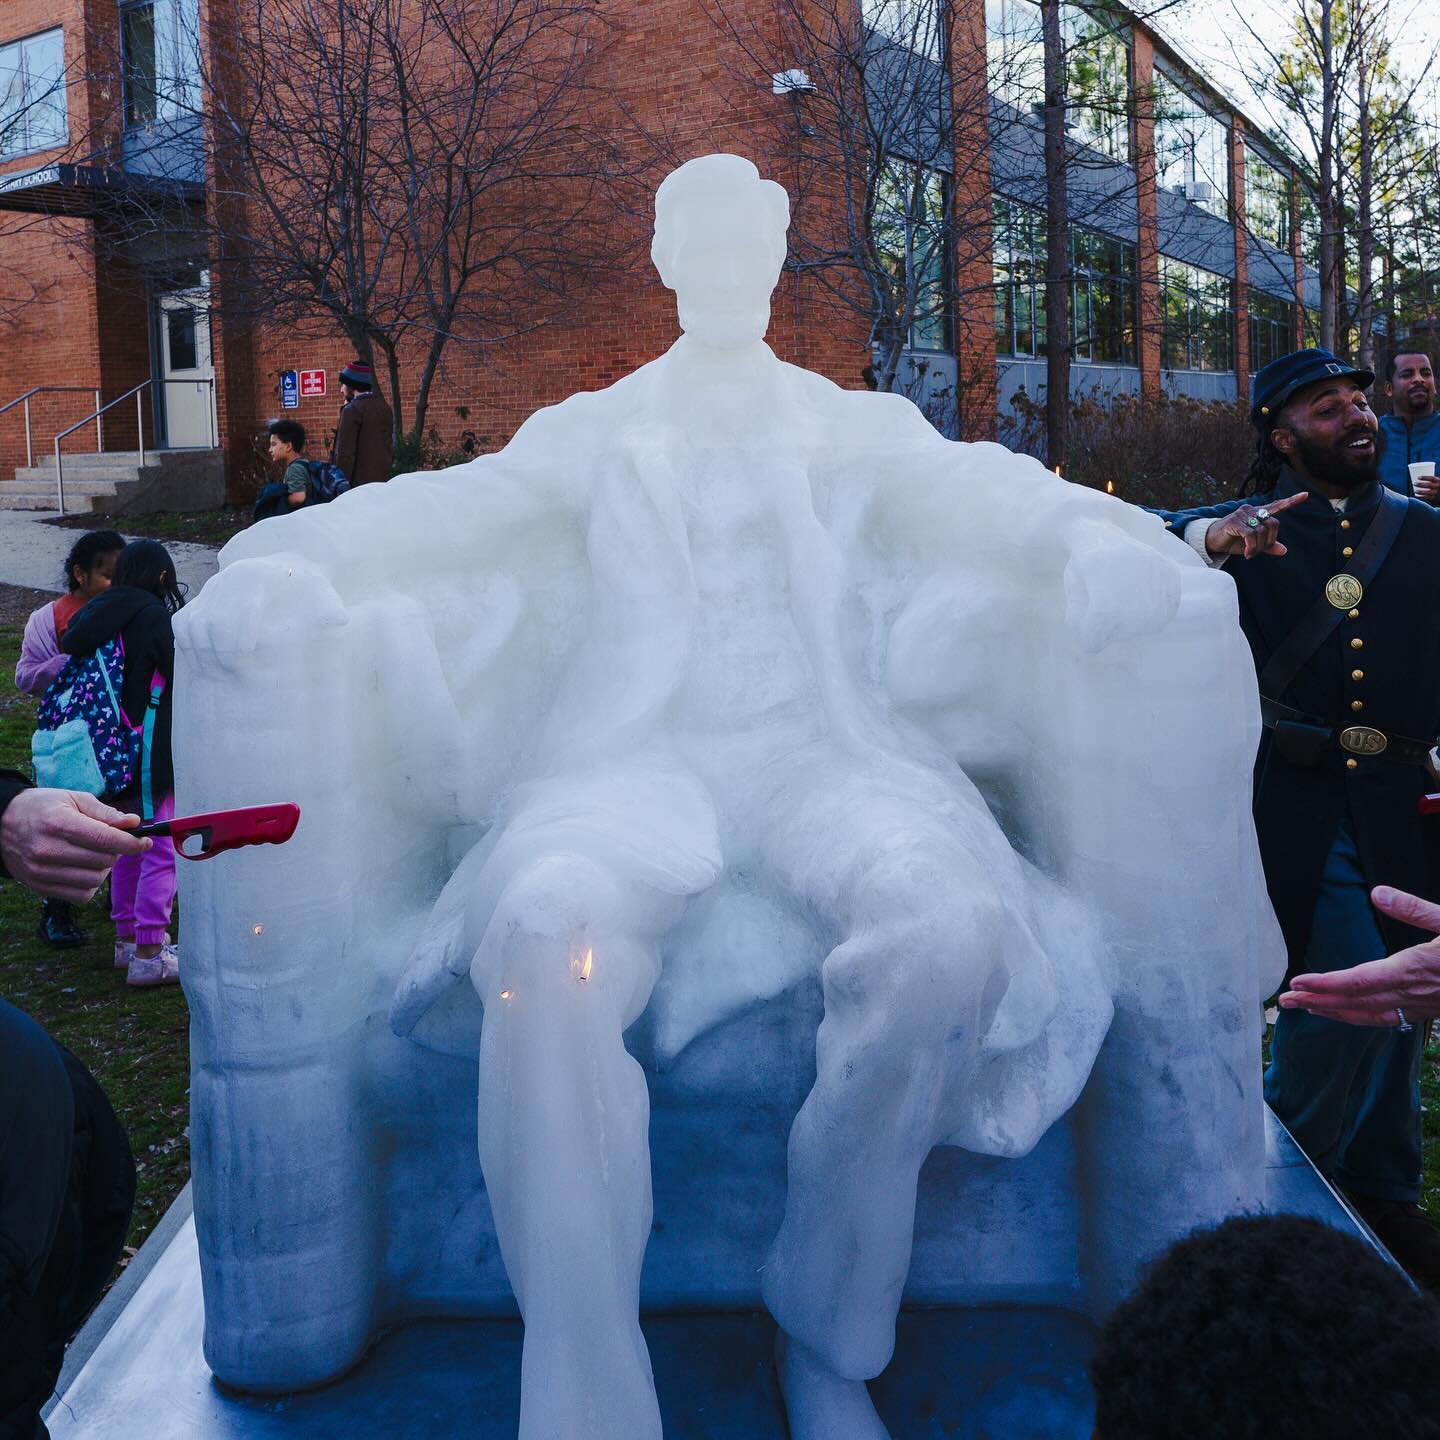 Το κέρινο άγαλμα του Αβραάμ Λίνκολν λιώνει από την υπερβολική ζέστη στην Ουάσιγκτον, DC